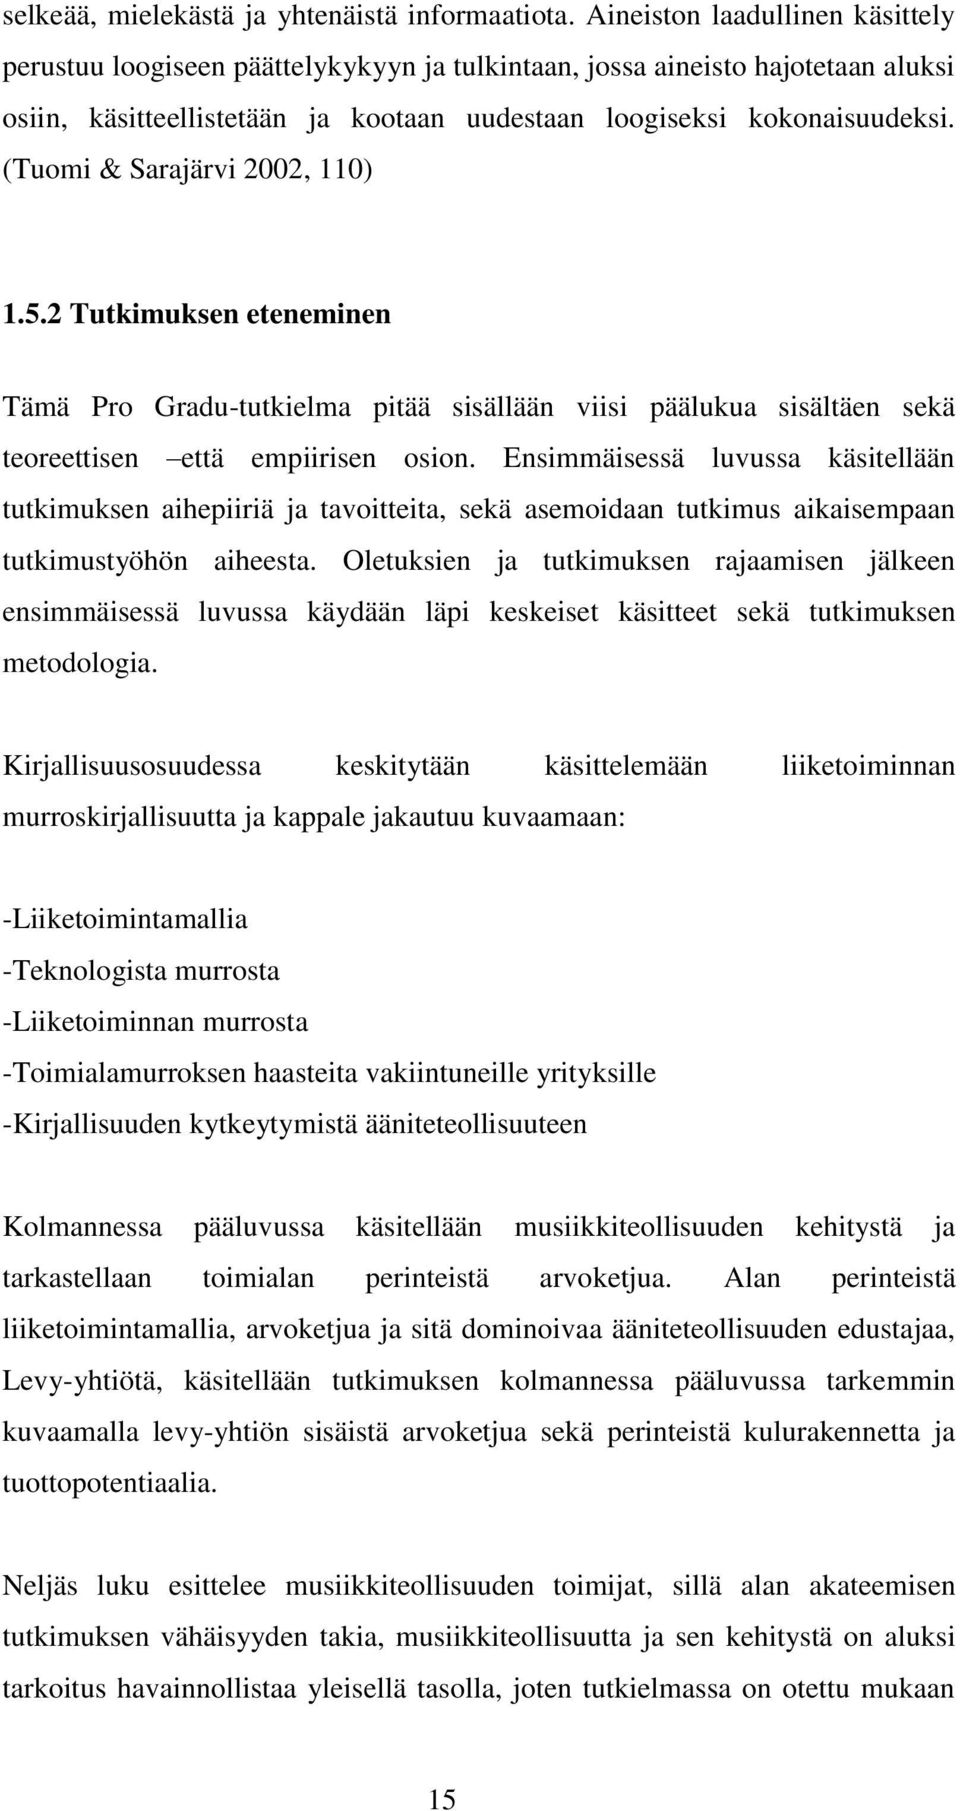 (Tuomi & Sarajärvi 2002, 110) 1.5.2 Tutkimuksen eteneminen Tämä Pro Gradu-tutkielma pitää sisällään viisi päälukua sisältäen sekä teoreettisen että empiirisen osion.